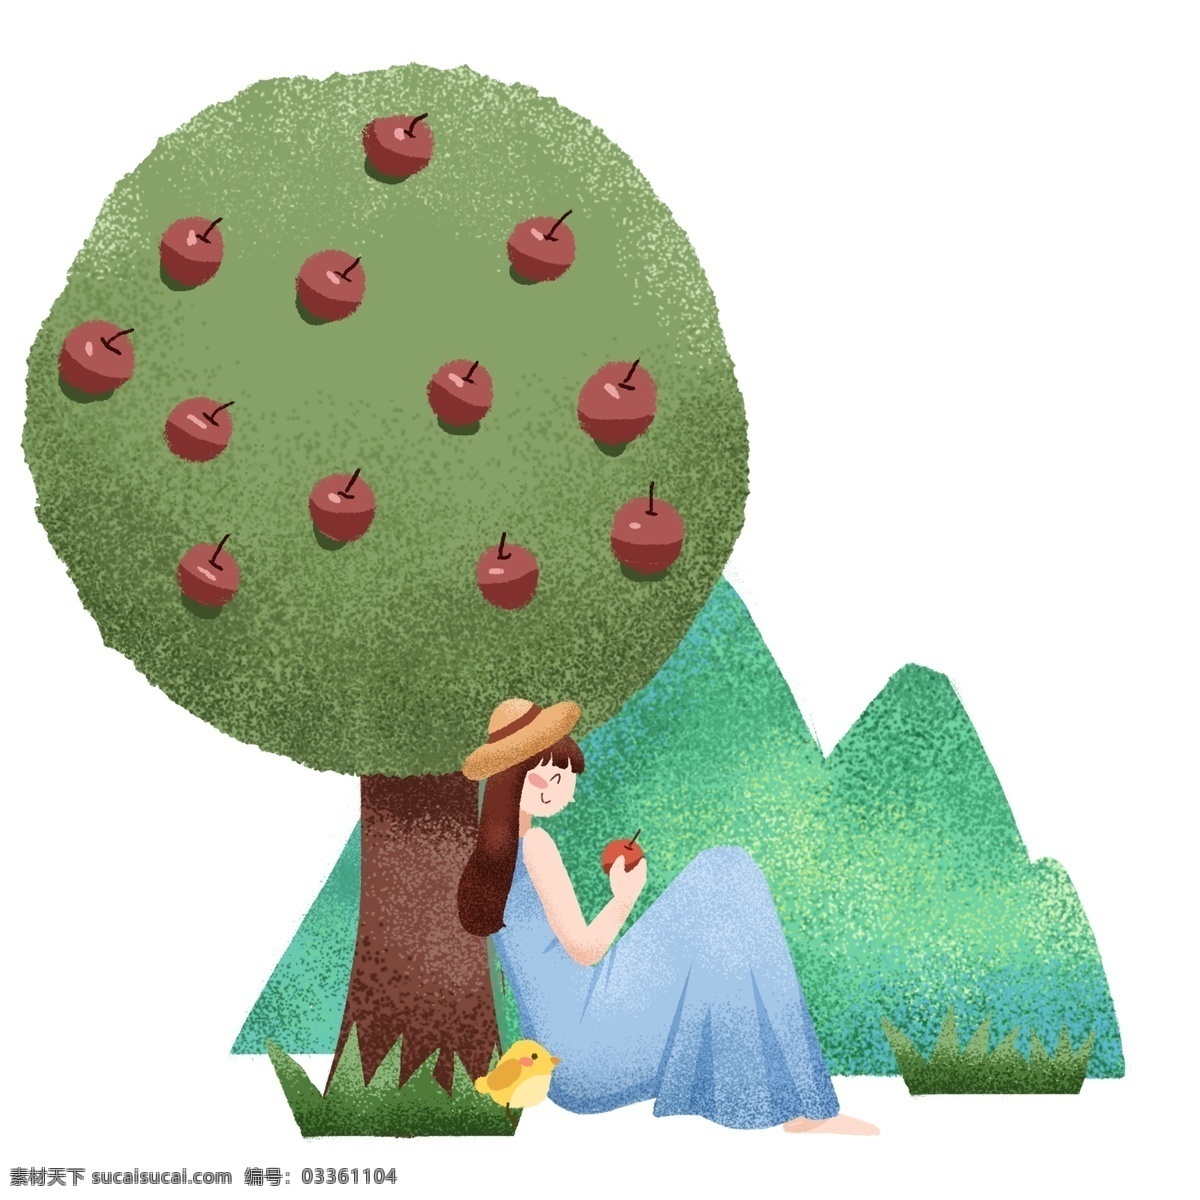 春季 踏青 苹果 插画 红色的苹果 卡通插画 春季插画 踏春插画 春季景色 春季风光 吃苹果的女孩